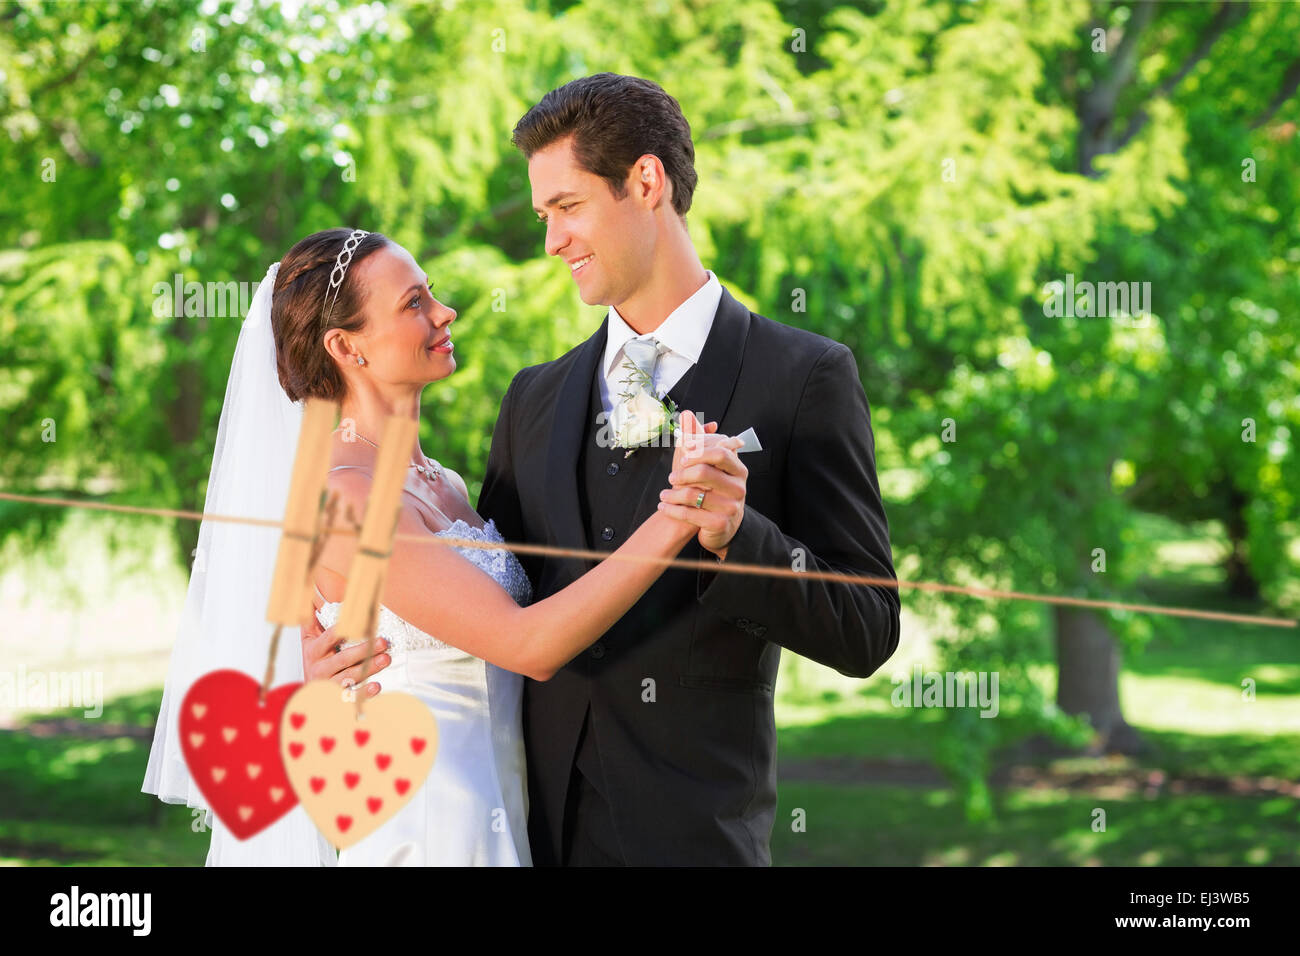 Immagine composita della coppia danzante sul giorno di nozze Foto Stock